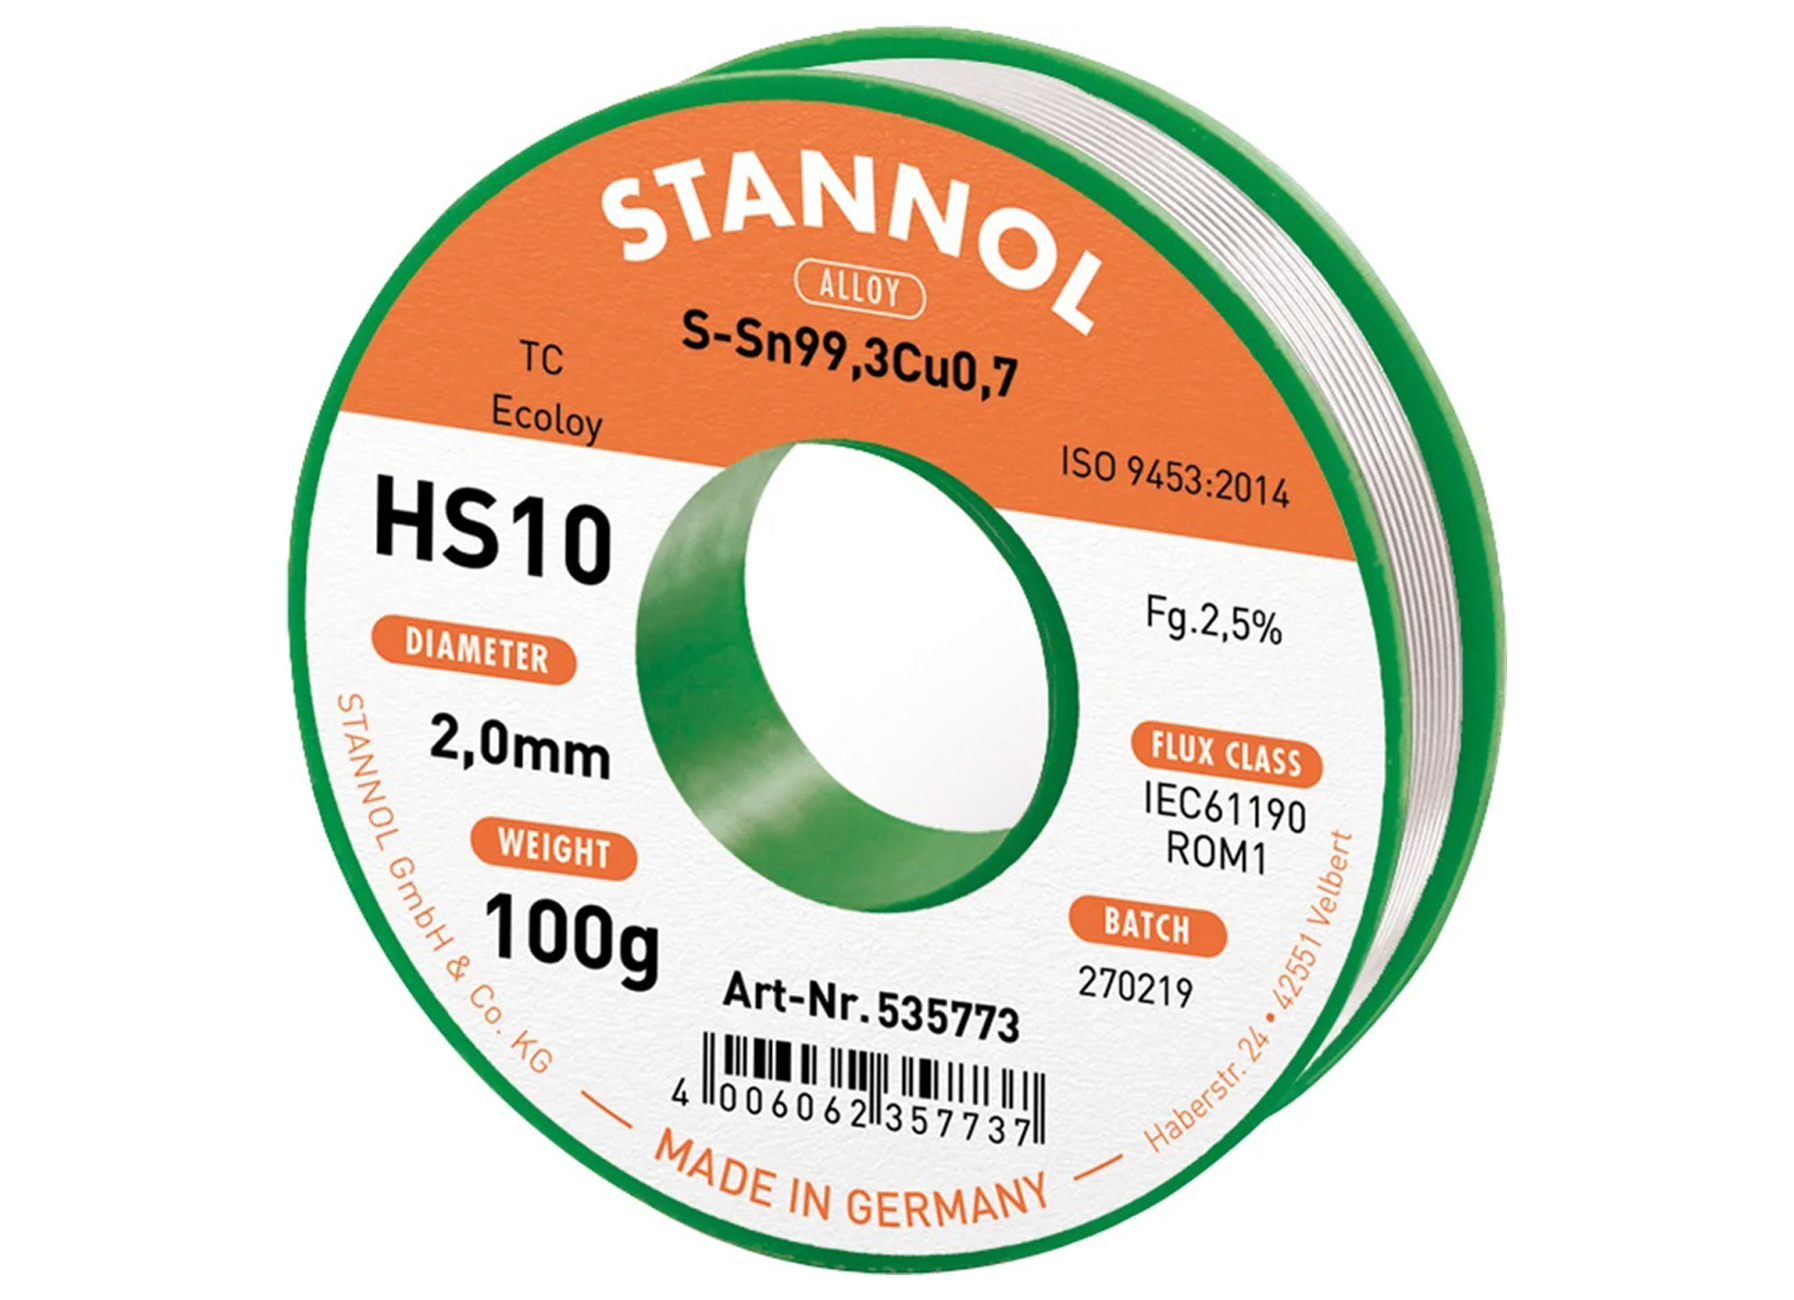 STANNOL SOLDEERDRAAD HS10 2,0MM 100G SN99,3/CU0,7